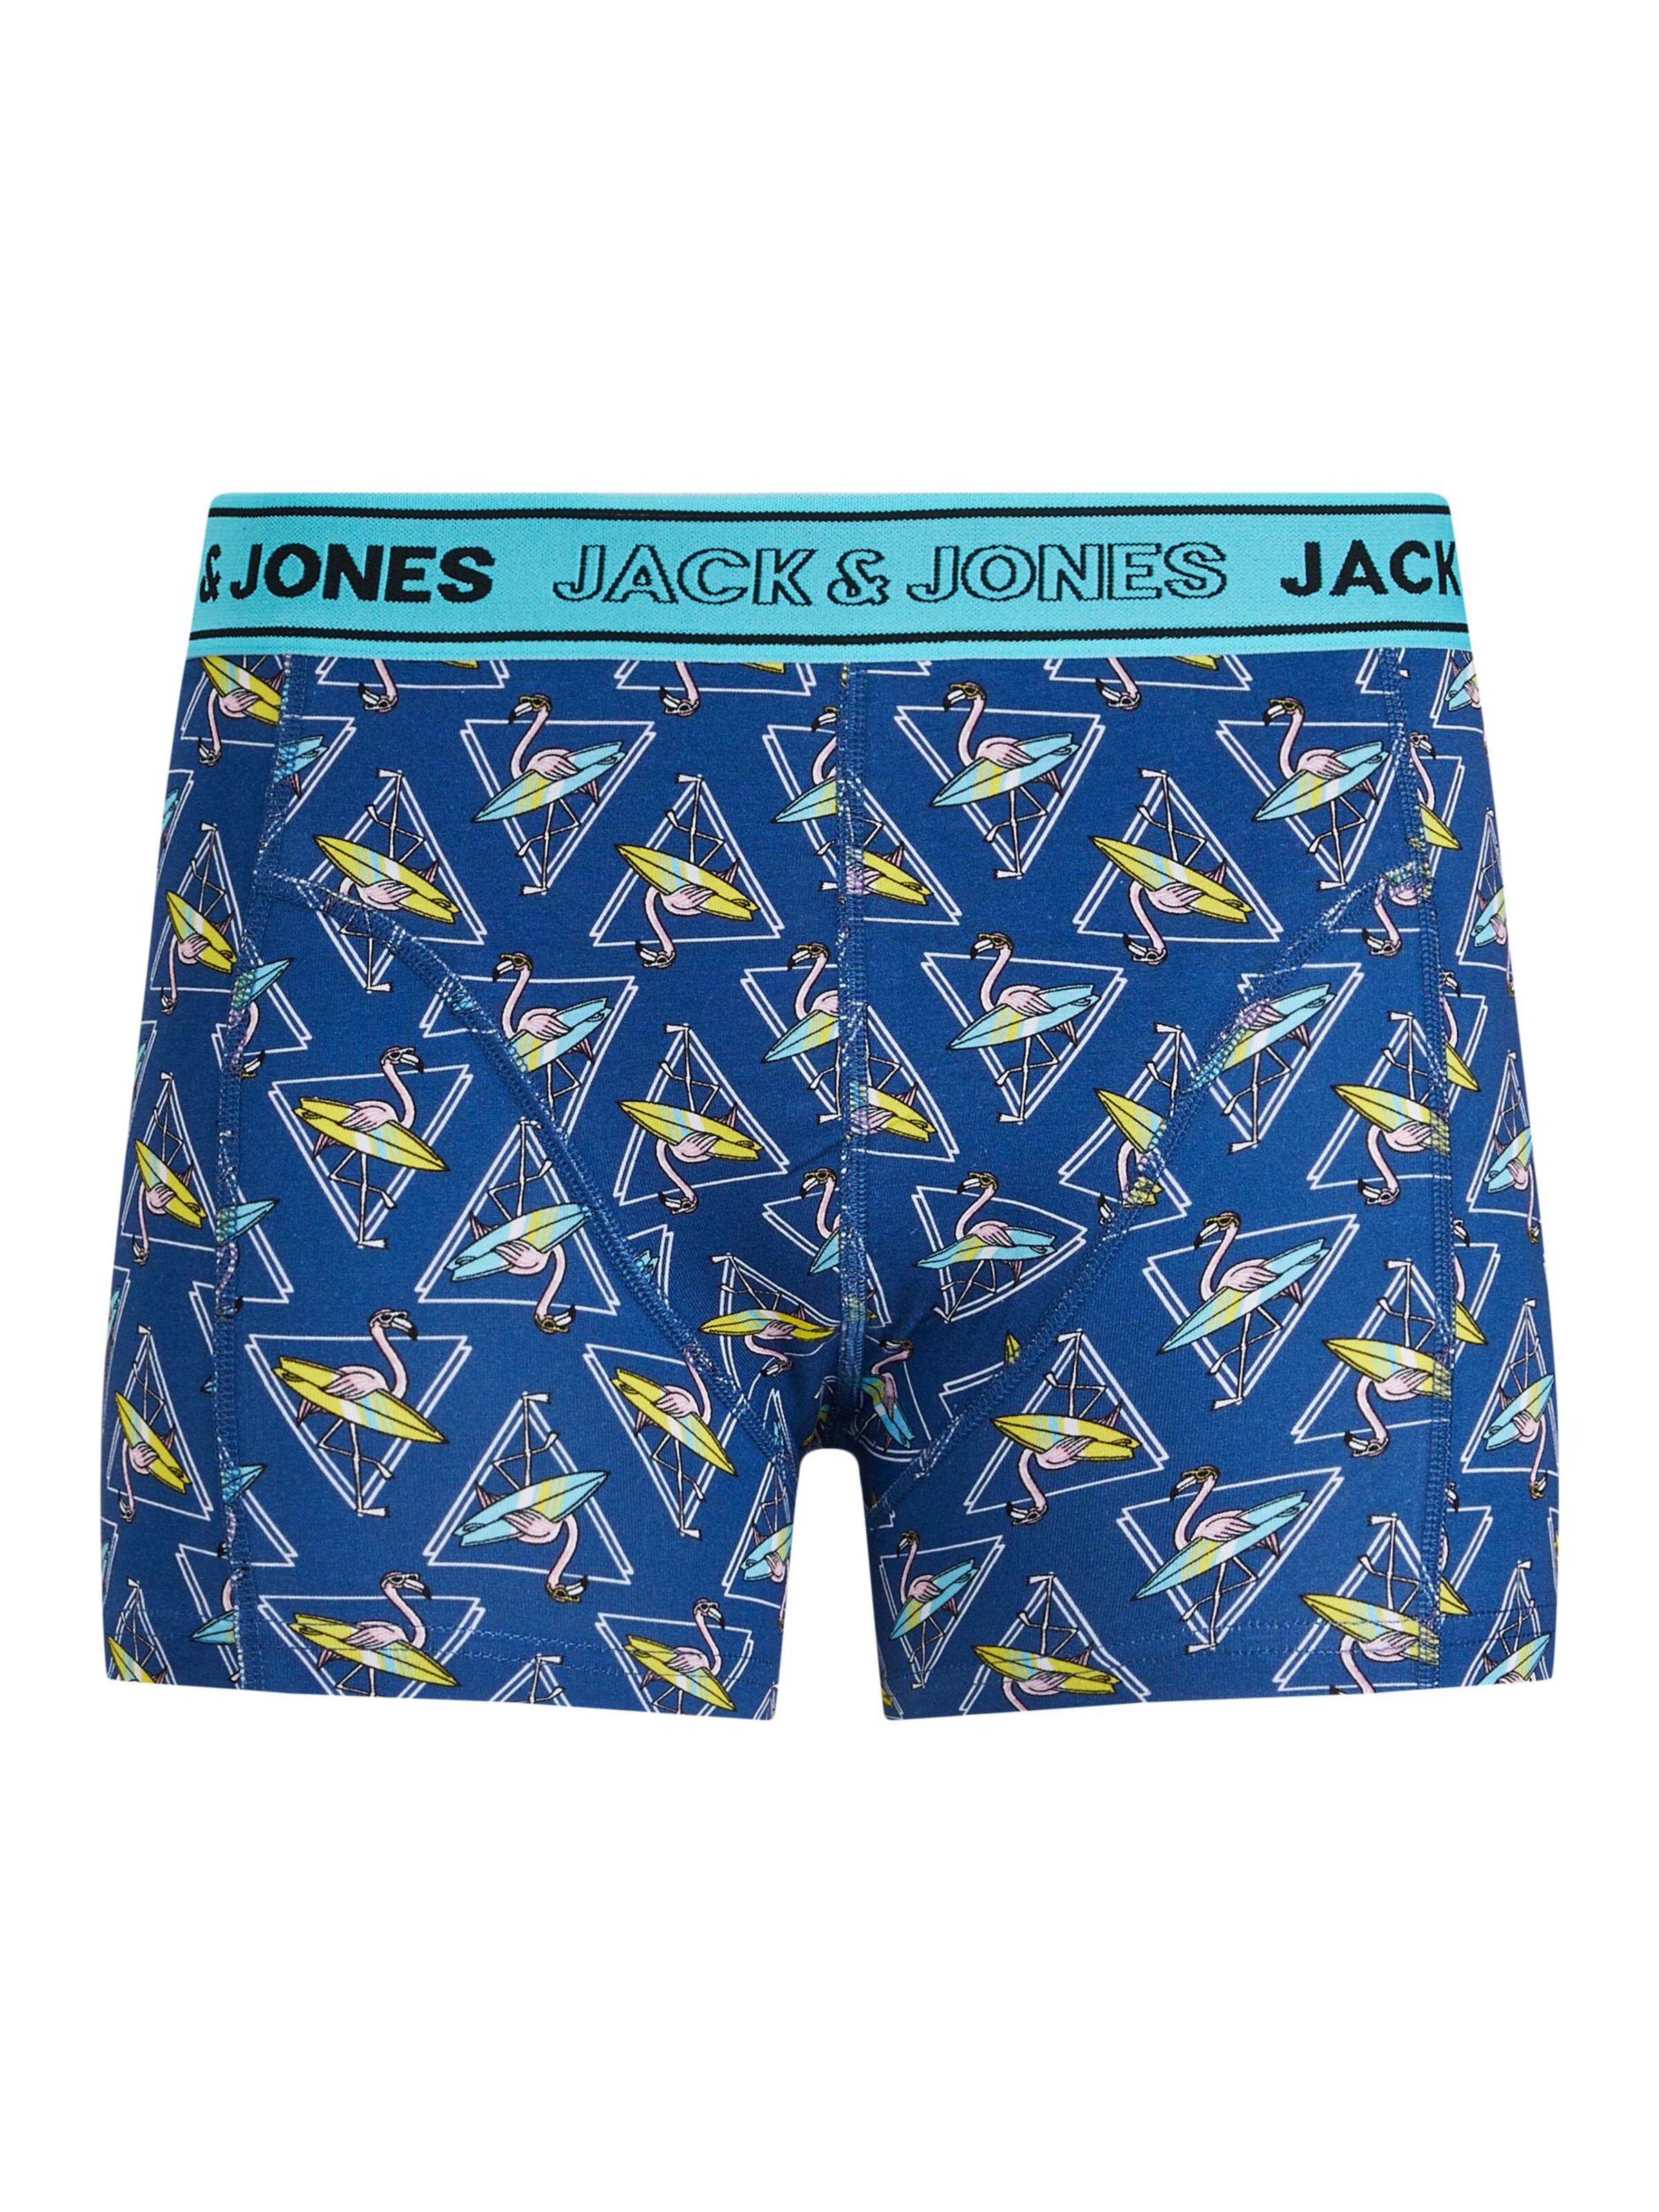 Sous-vêtements Boxers JACK & JONES en Aqua, Marine, Bleu Marine 